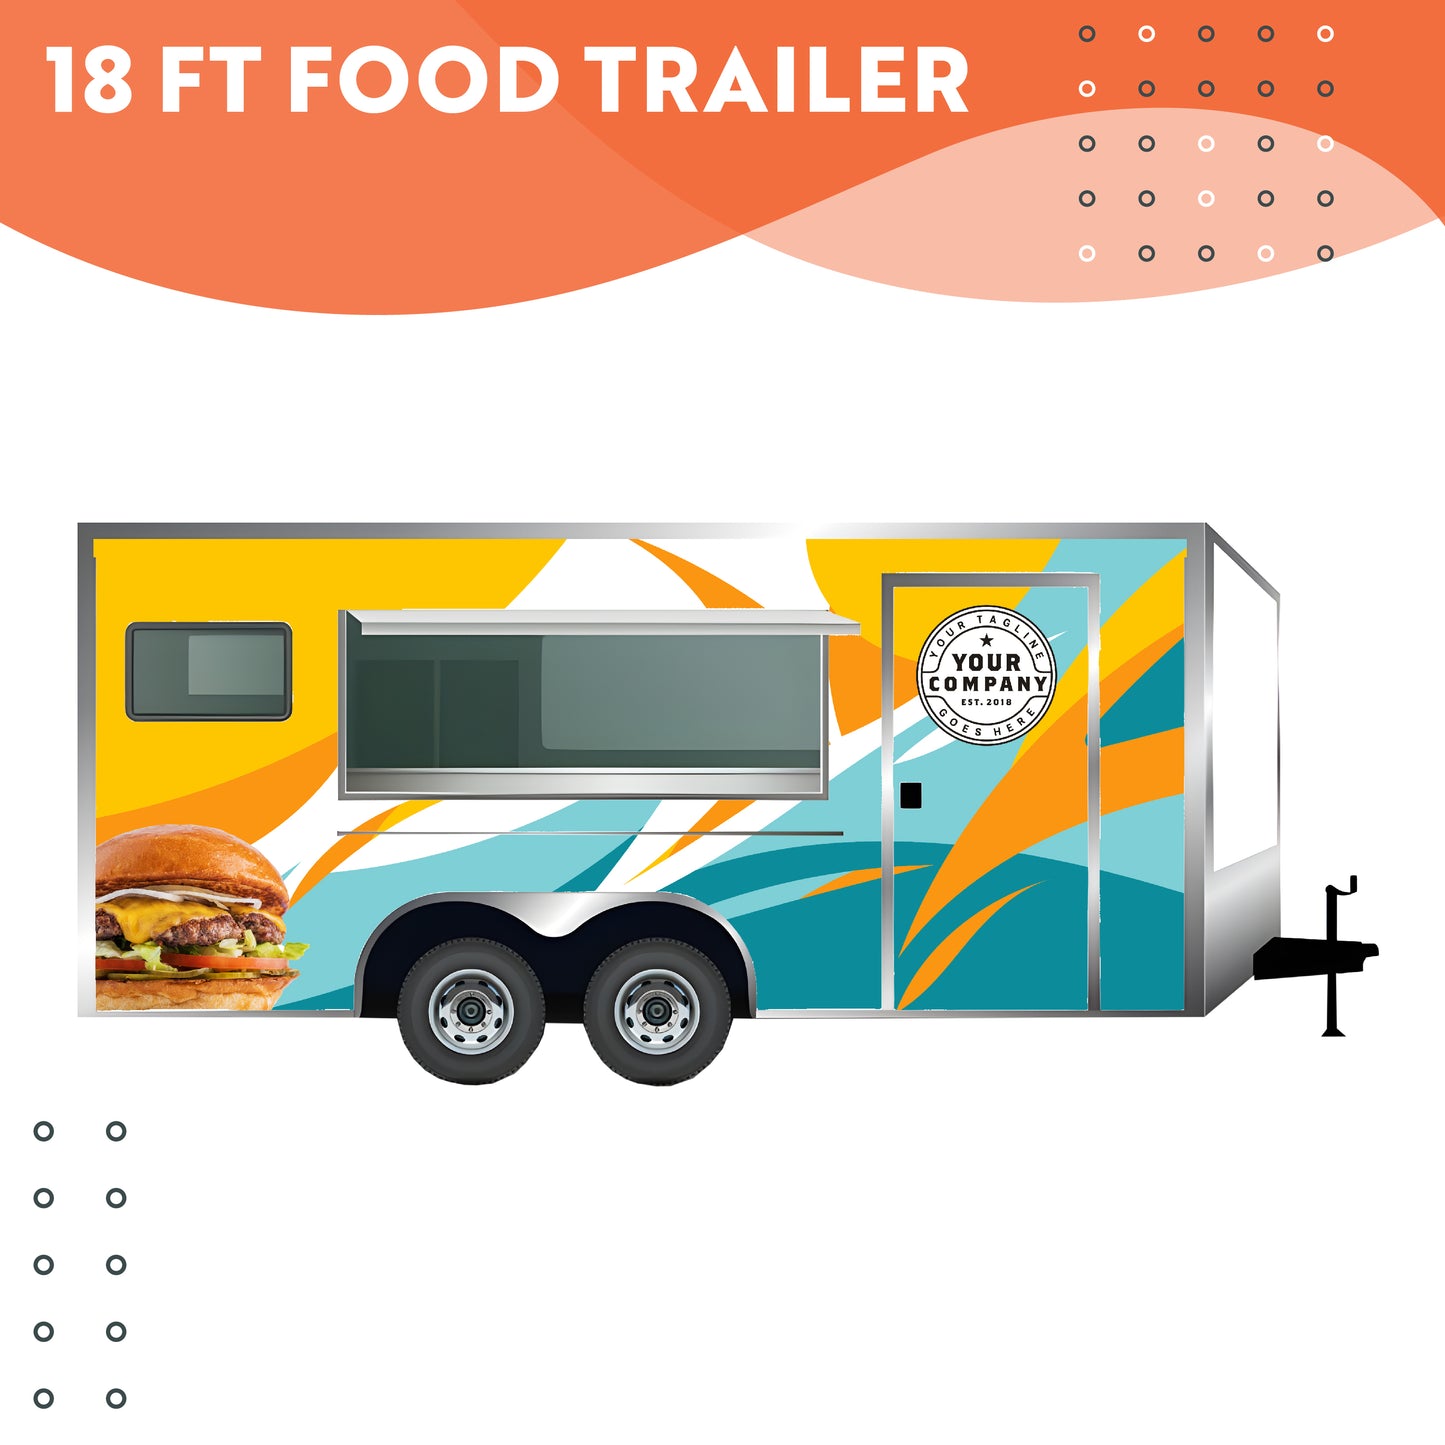 18 ft Food Trailer